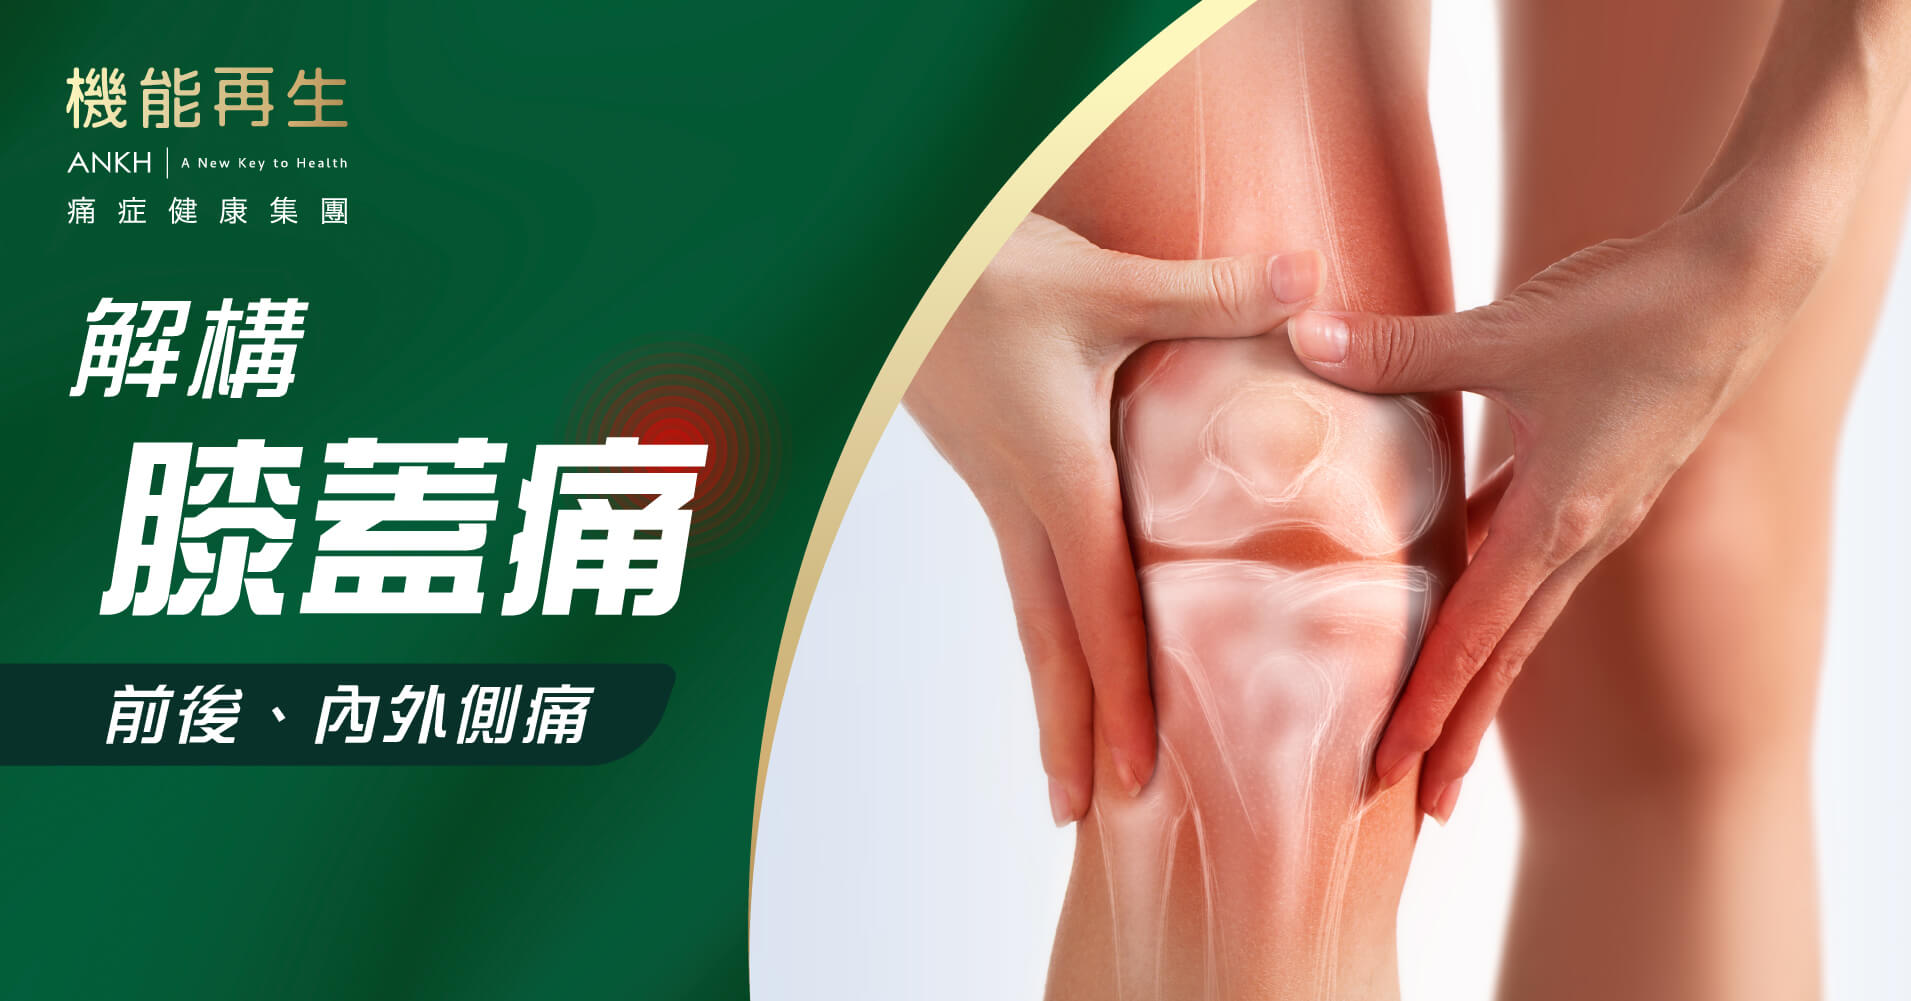 【突然膝蓋痛？】內外、前後側痛位置分別全面睇，了解自我檢測方法。